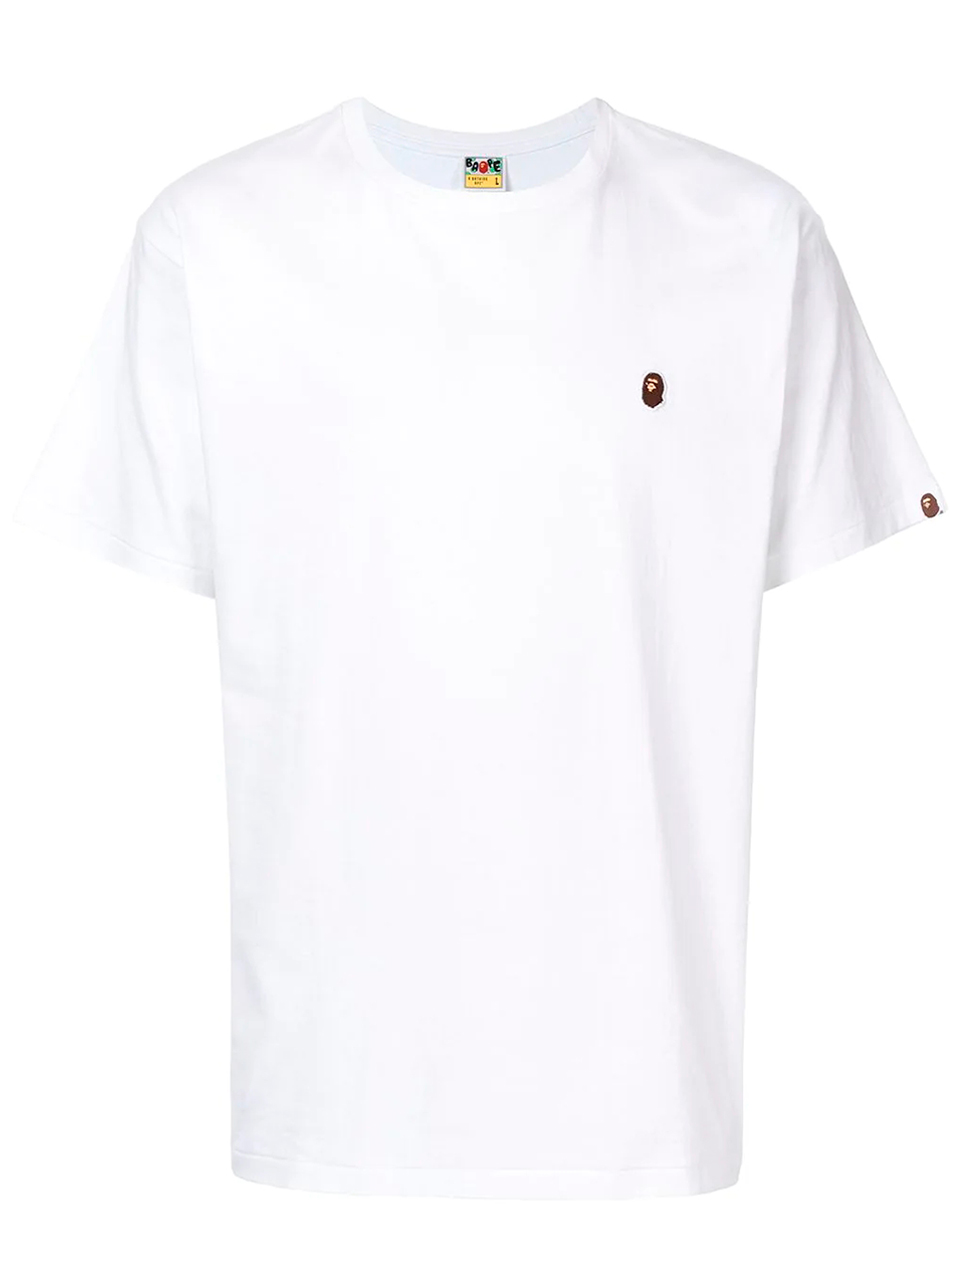 Imagem de: Camiseta BAPE Branca com Logo Pequeno